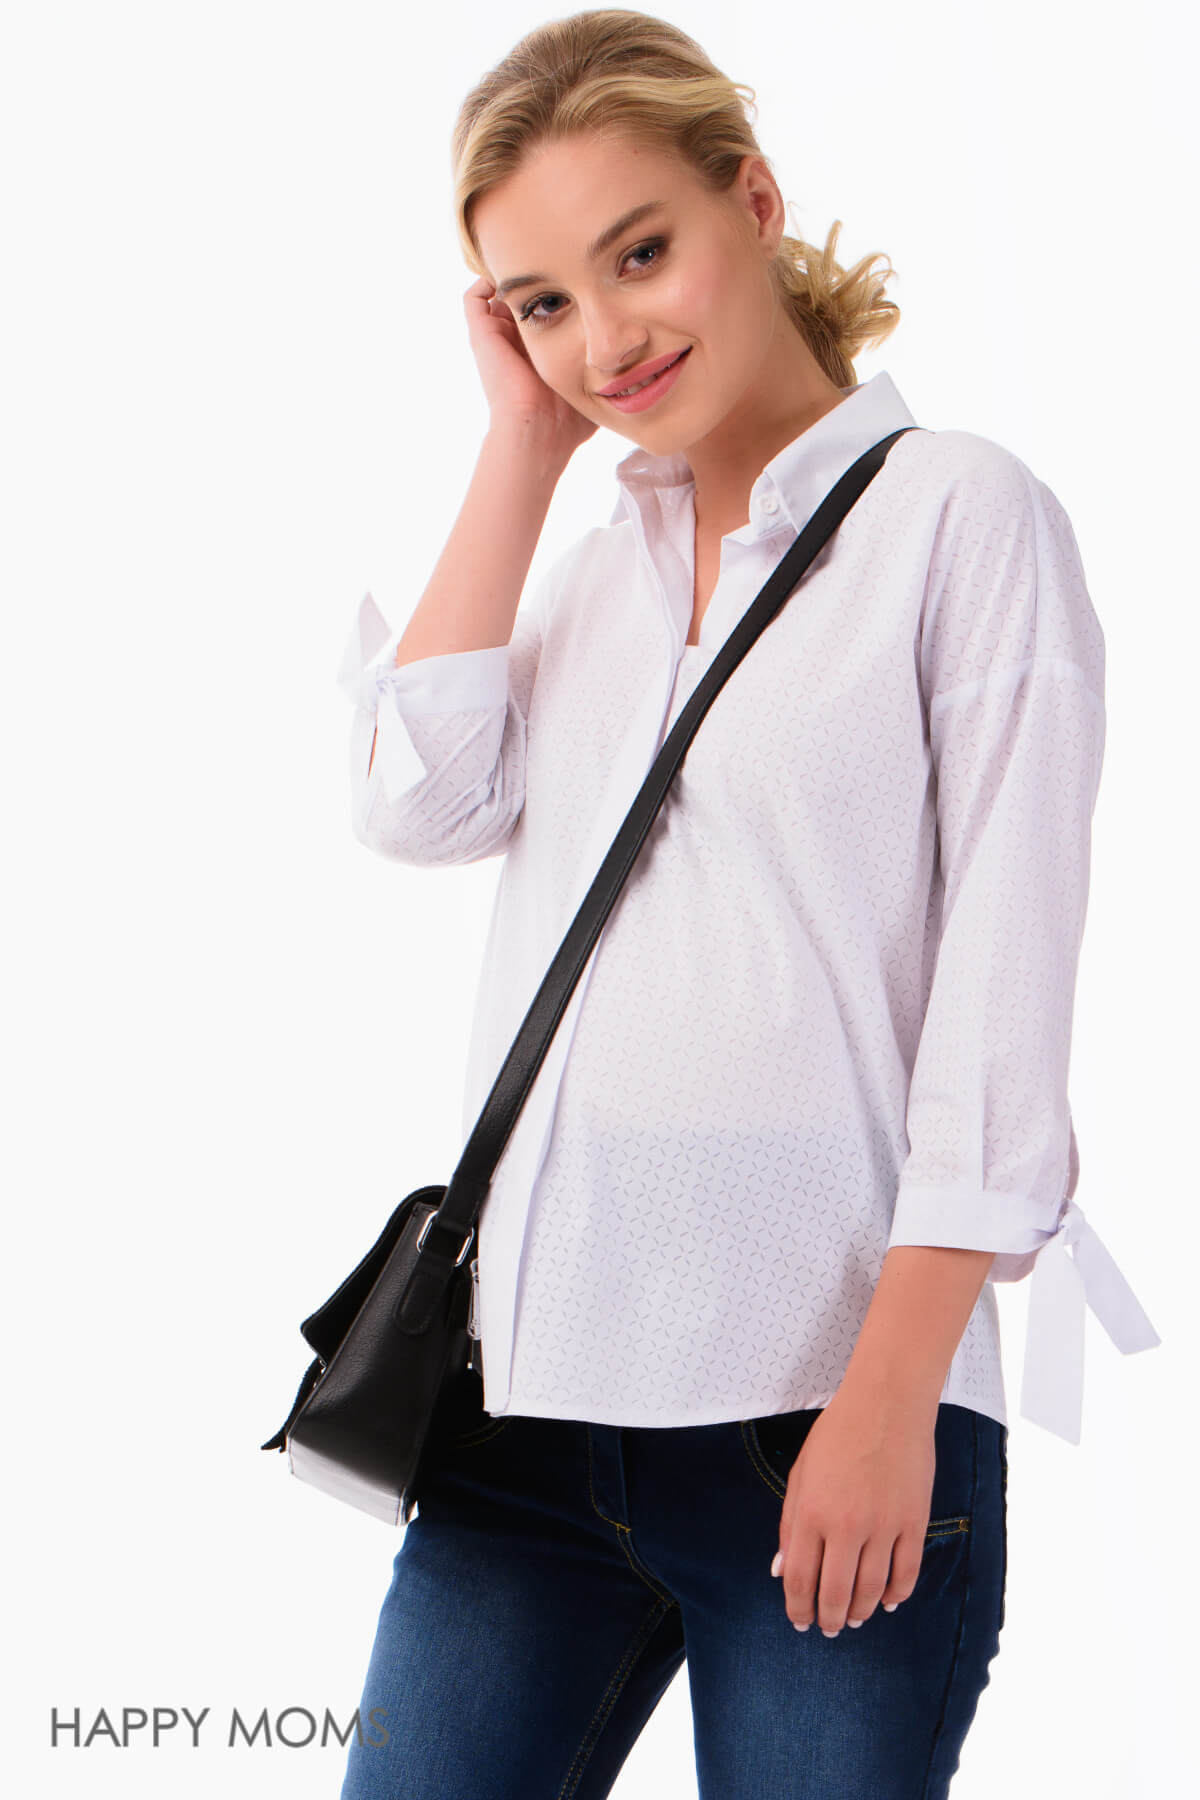 Рубашка для беременных женщин белая офисная классическая блуза блузка женская будущих мам / Happy Moms